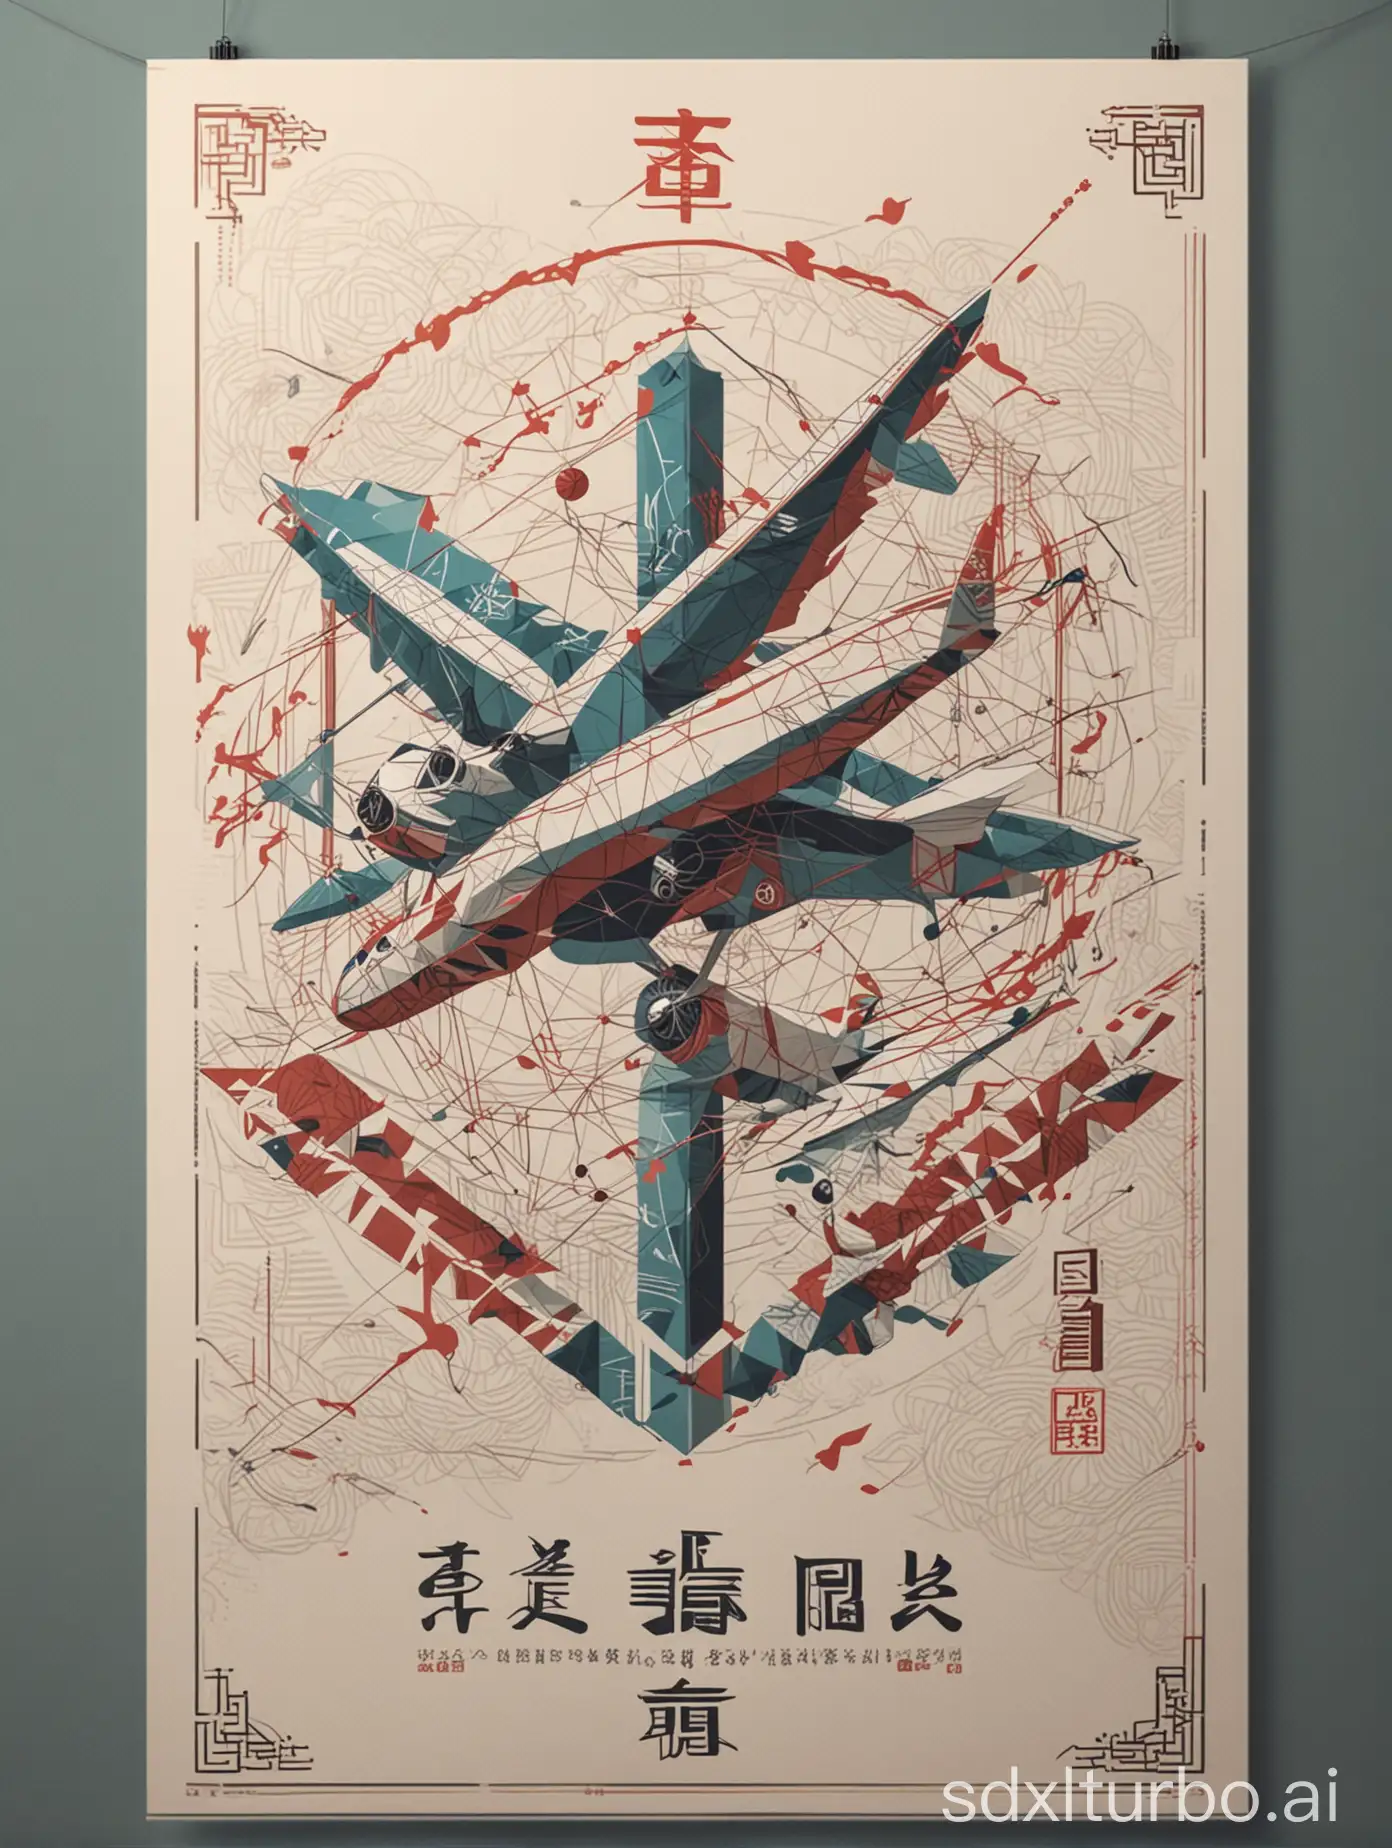 制作一张平面海报、“使用现代线条和几何形状，要有中国文化、科技感、线条、平面、